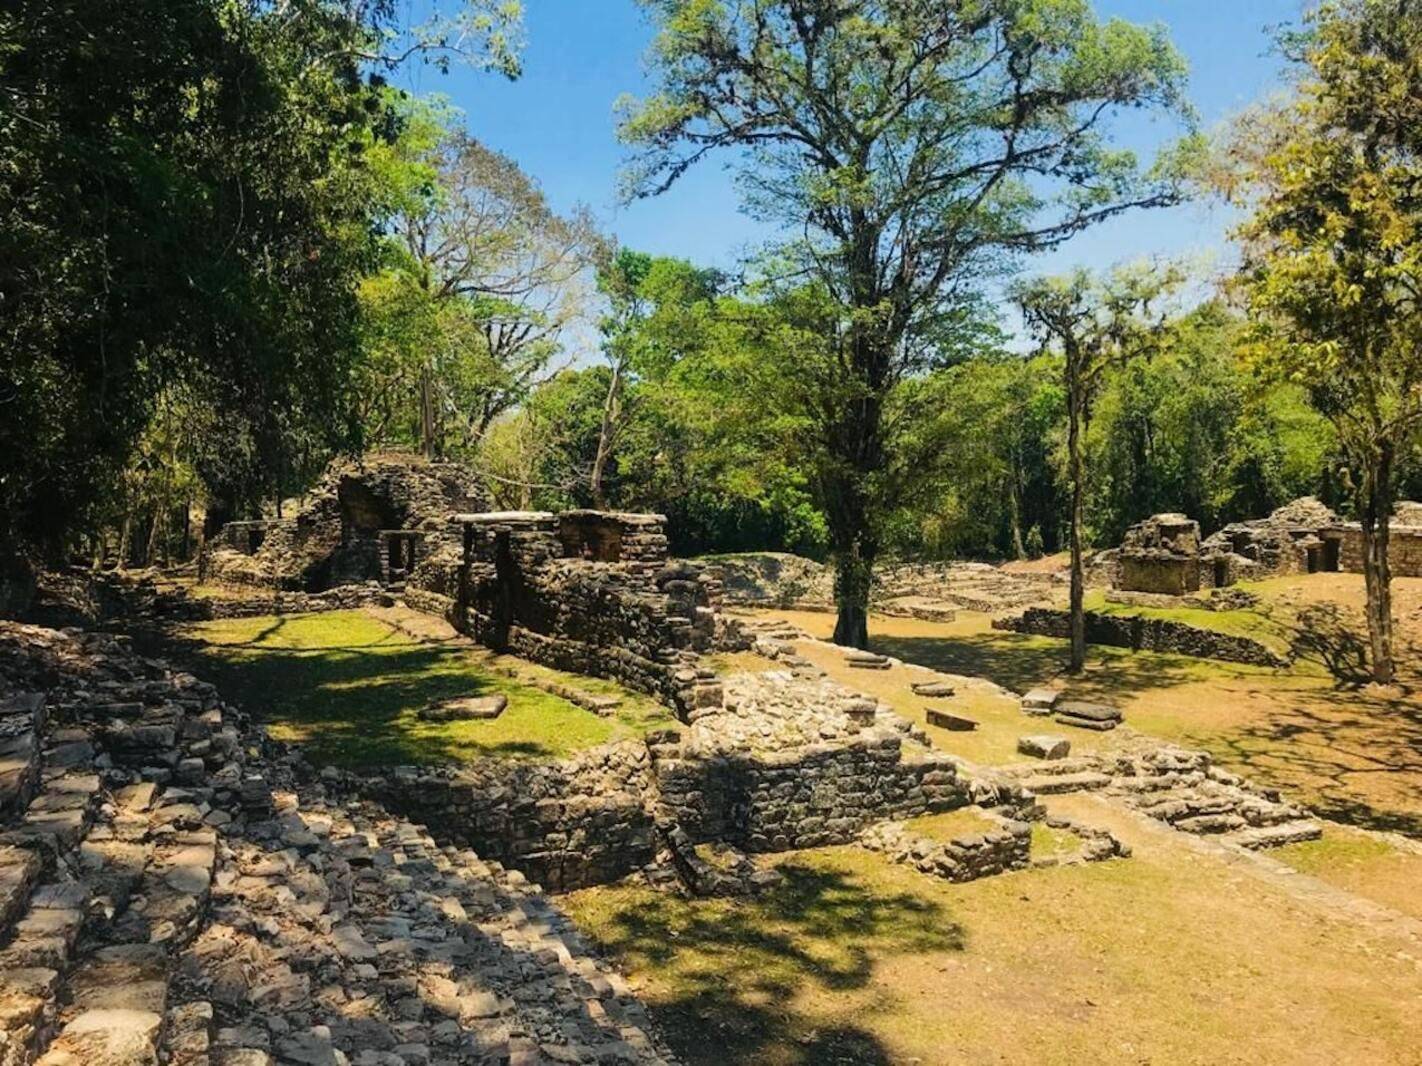 Alla scoperta dell'affascinante sito archeologico di Yaxchilán